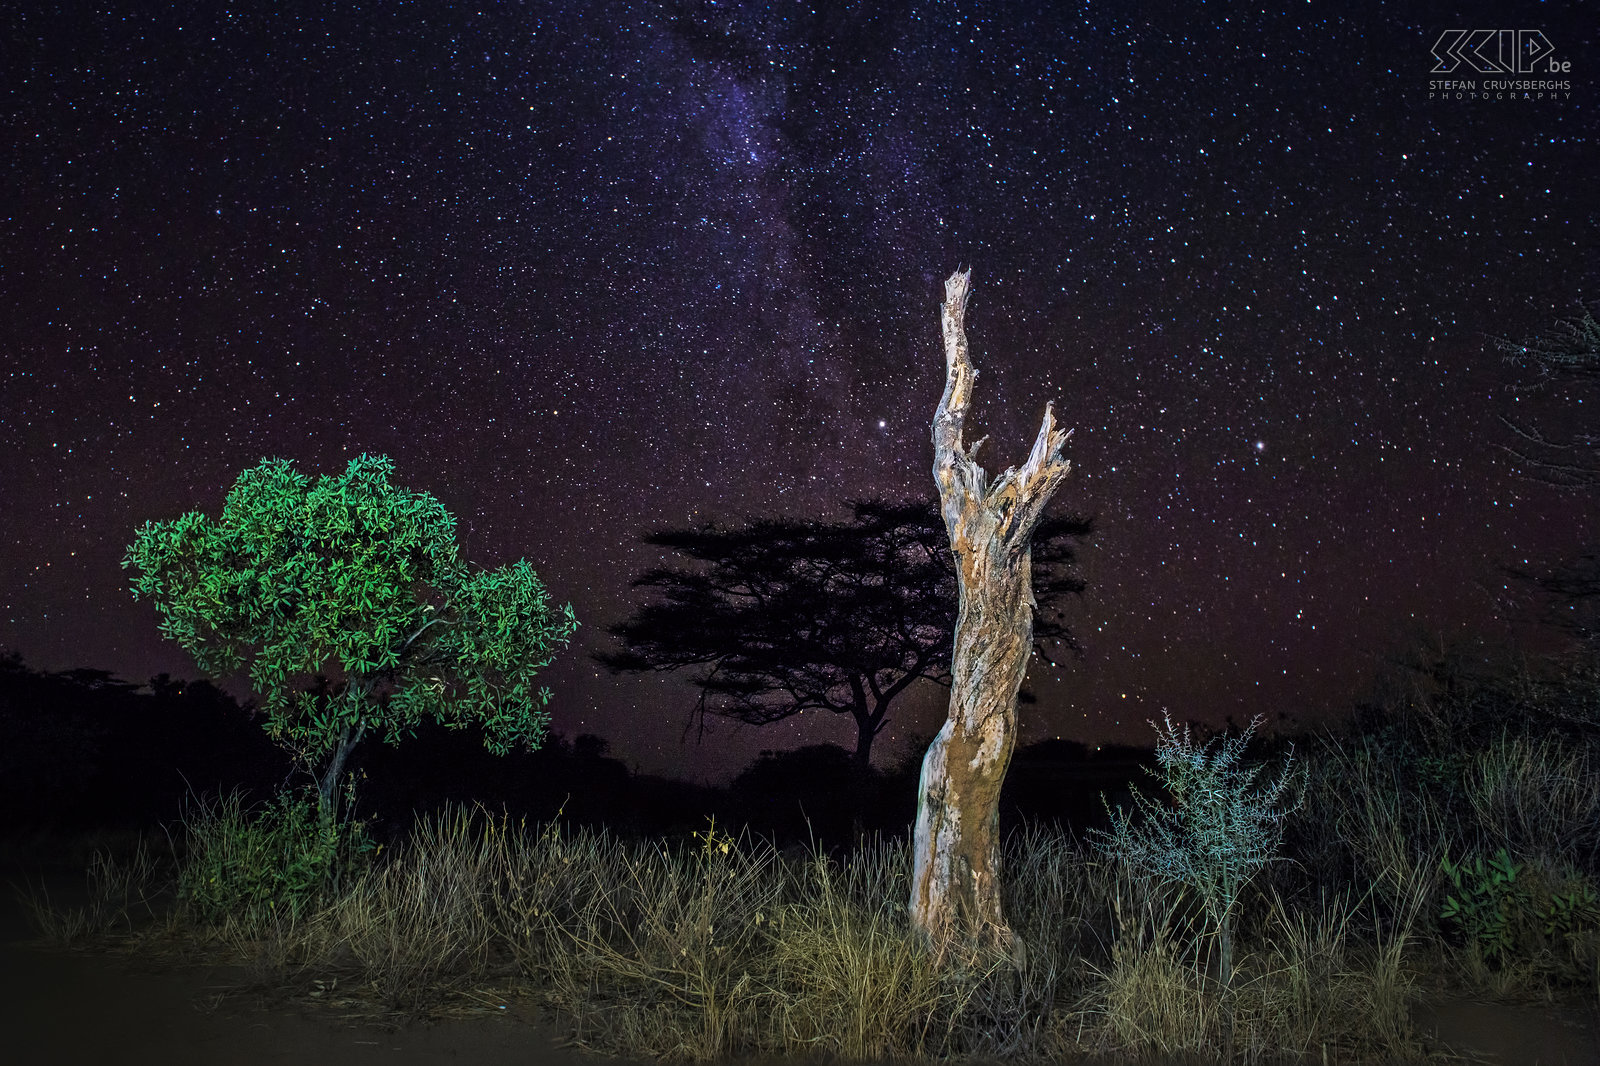 Samburu - Sterrenhemel en melkweg ‘s Nachts is de Afrikaanse hemel verbazingwekkend. Dus probeerde ik een aantal foto's van de prachtige sterrenhemel en de melkweg te maken. Ik maakte deze foto net buiten onze kampplaats in Samburu NP en ik gebruikte mijn zaklamp om de bomen op de voorgrond te verlichten. Stefan Cruysberghs